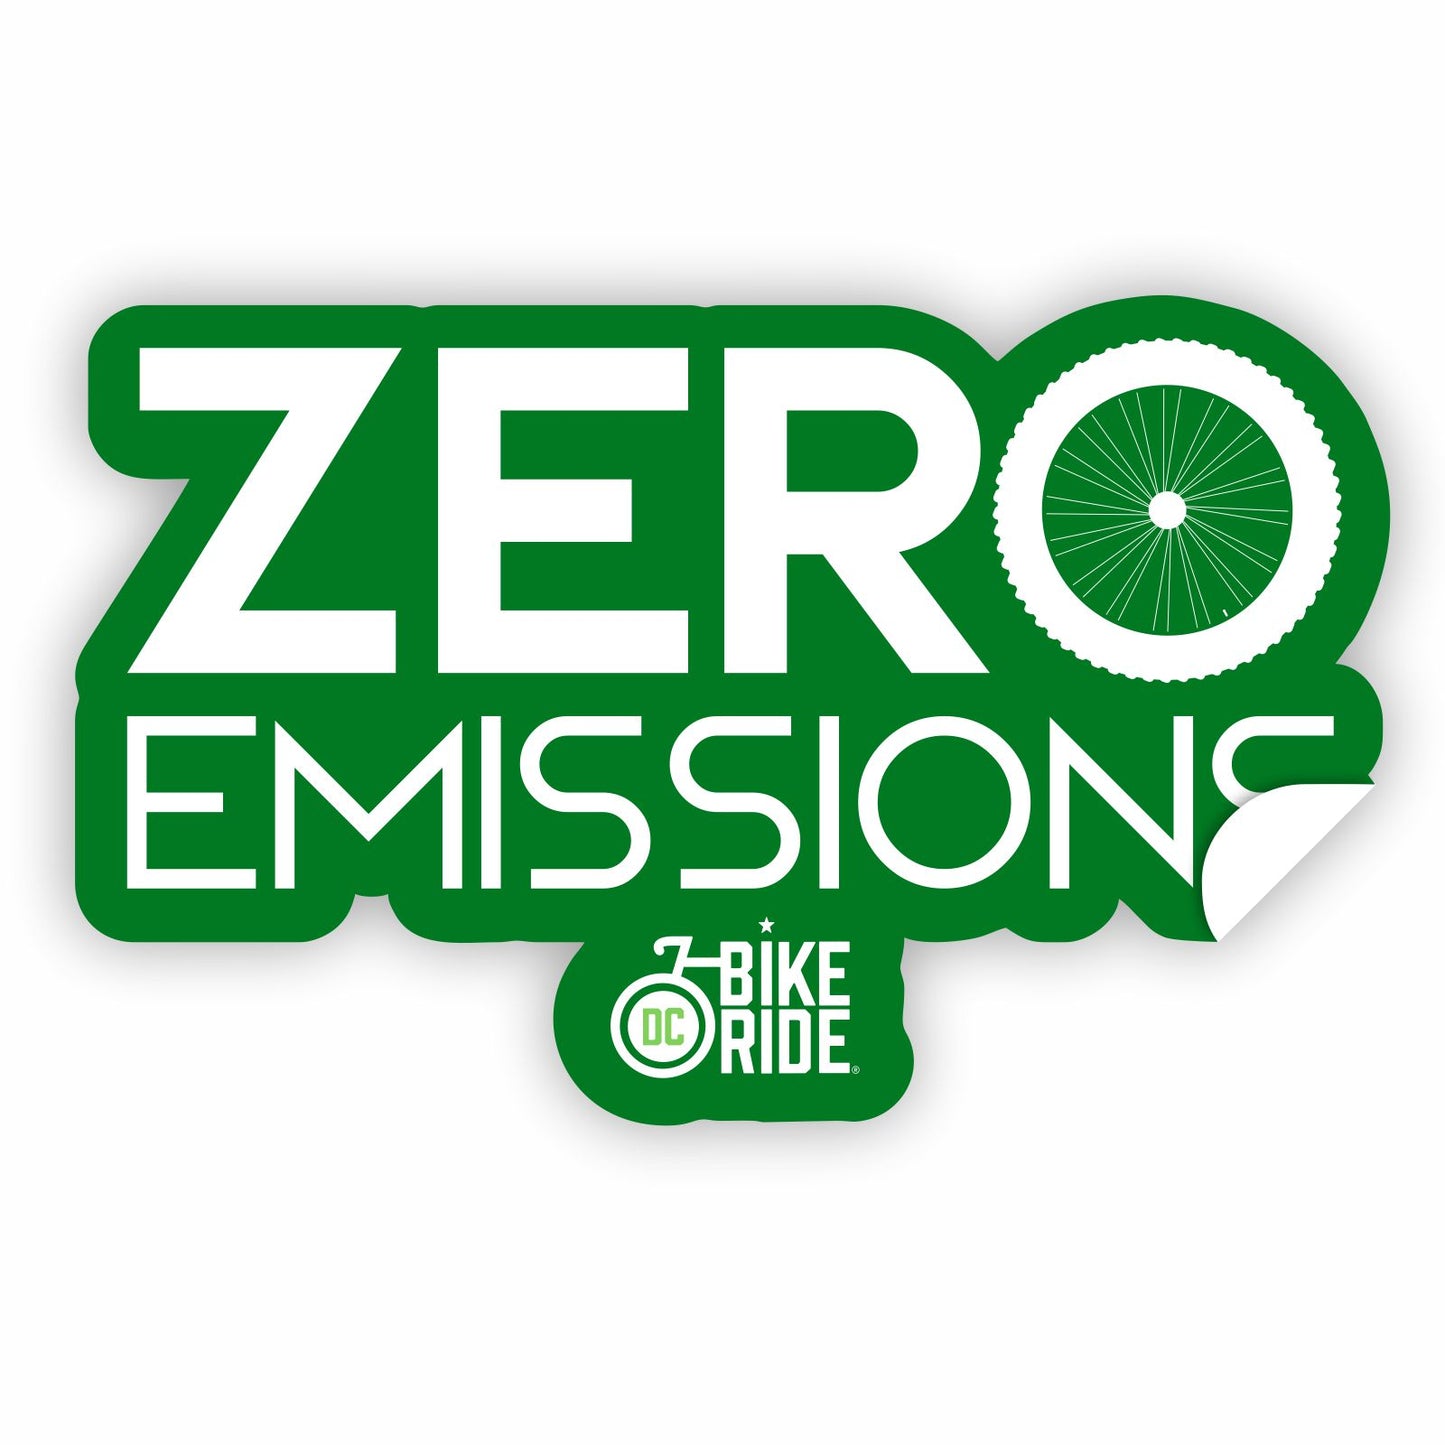 DC Bike Ride Die-Cut Sticker - Green 3"x3" Zero Emissions